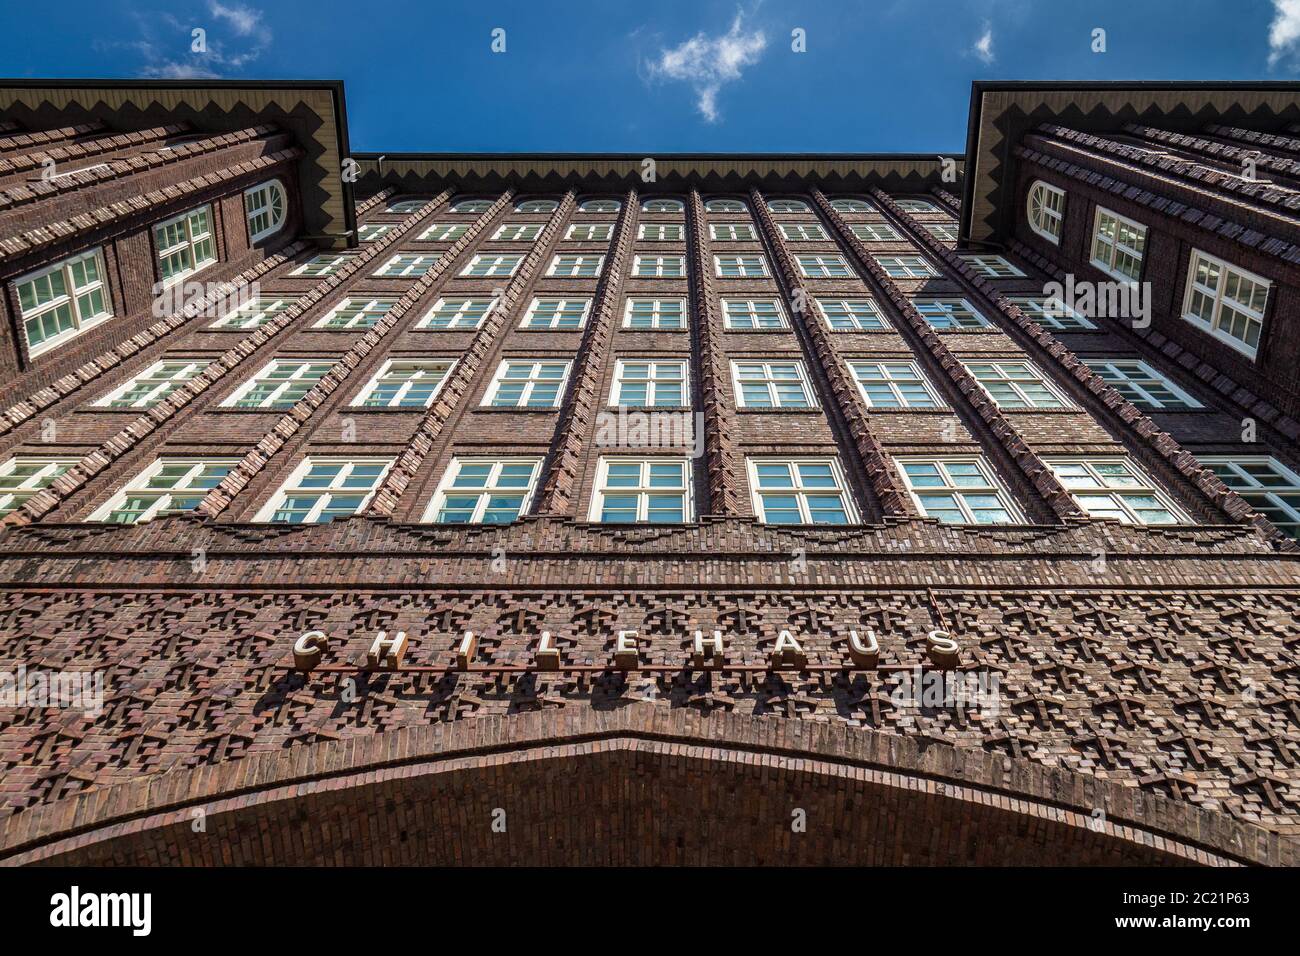 ChileHaus Hamburg - Cile House - esempio di 1920s'Espressionismo mattone architettura - architetto Fritz Höger completato 1924 Foto Stock